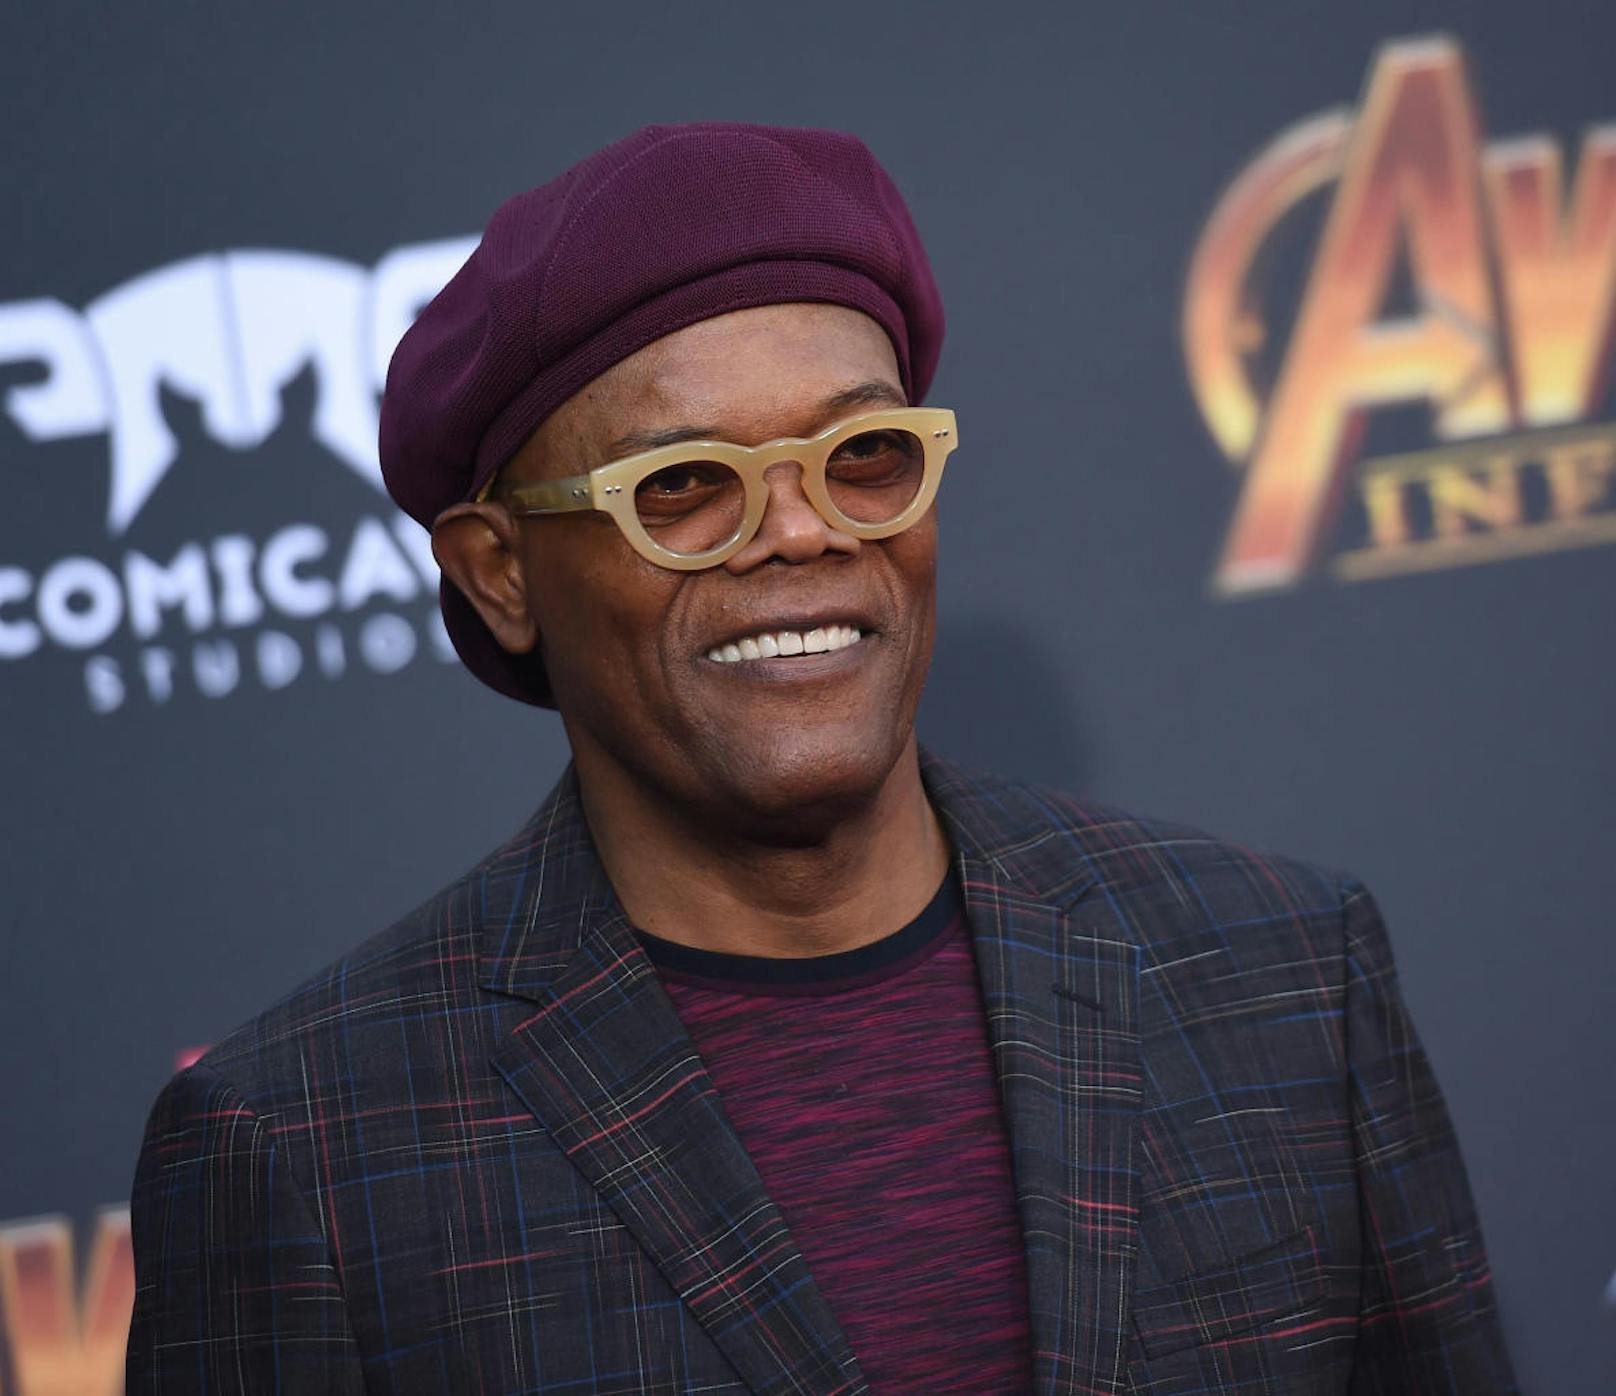 Samuel L. Jackson am 23. April 2018 bei der Premiere von "Avengers: Infinity War" in Hollywood